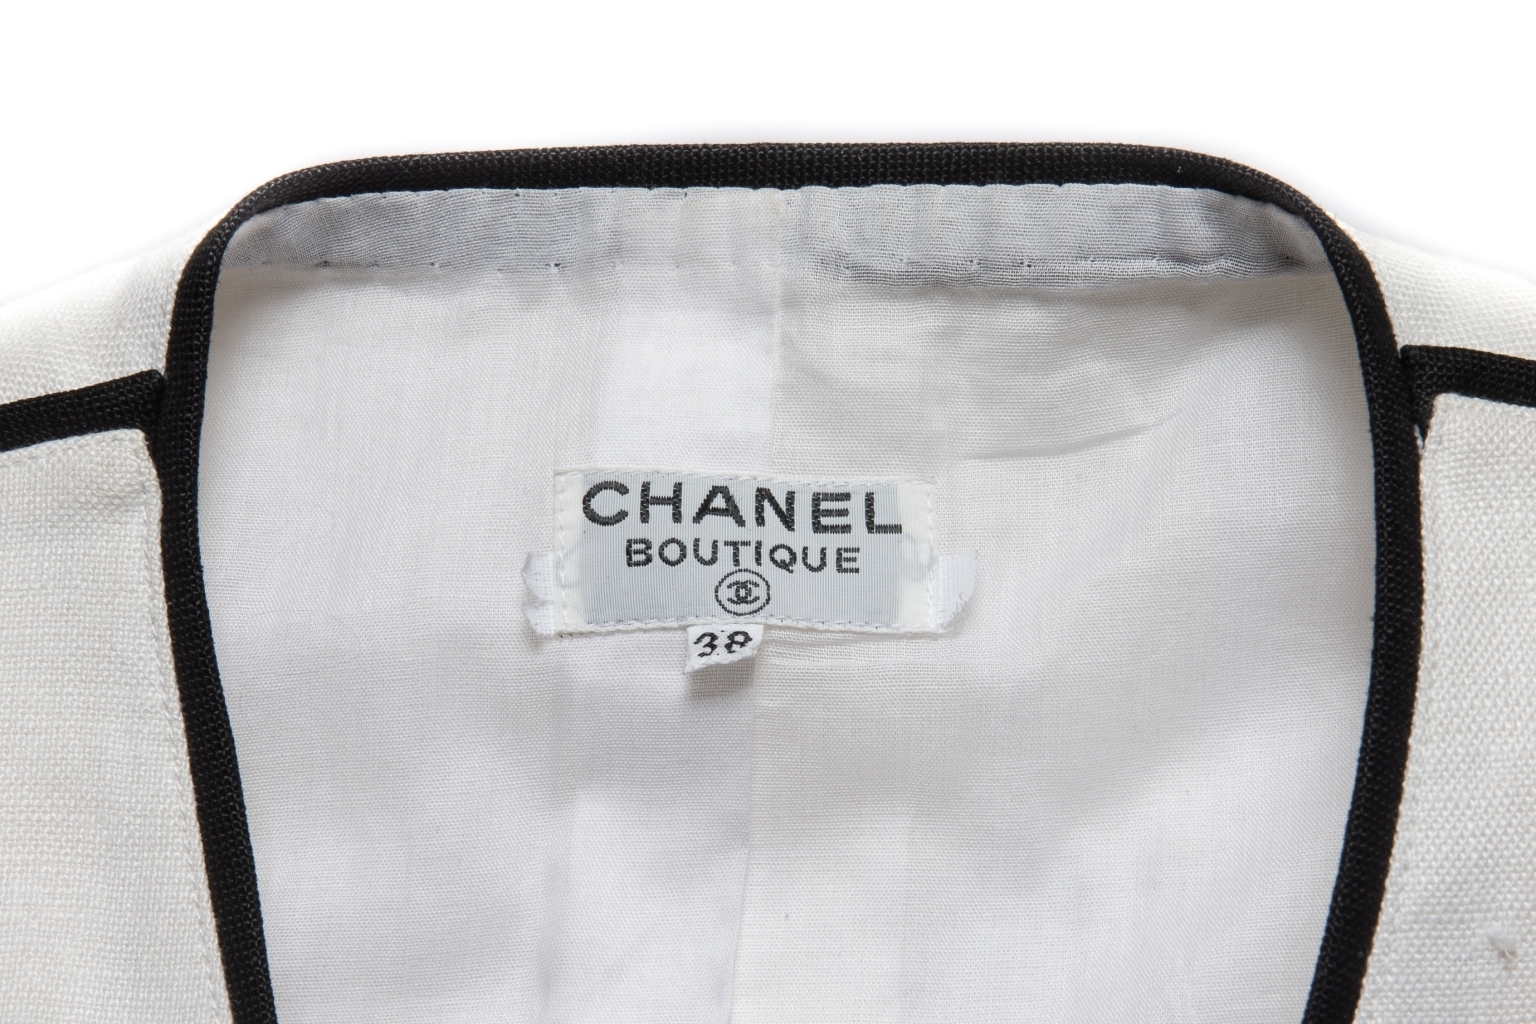 Женственный жакет от Chanel из льна белого цвета с отделкой черного цвета, 38 размер.